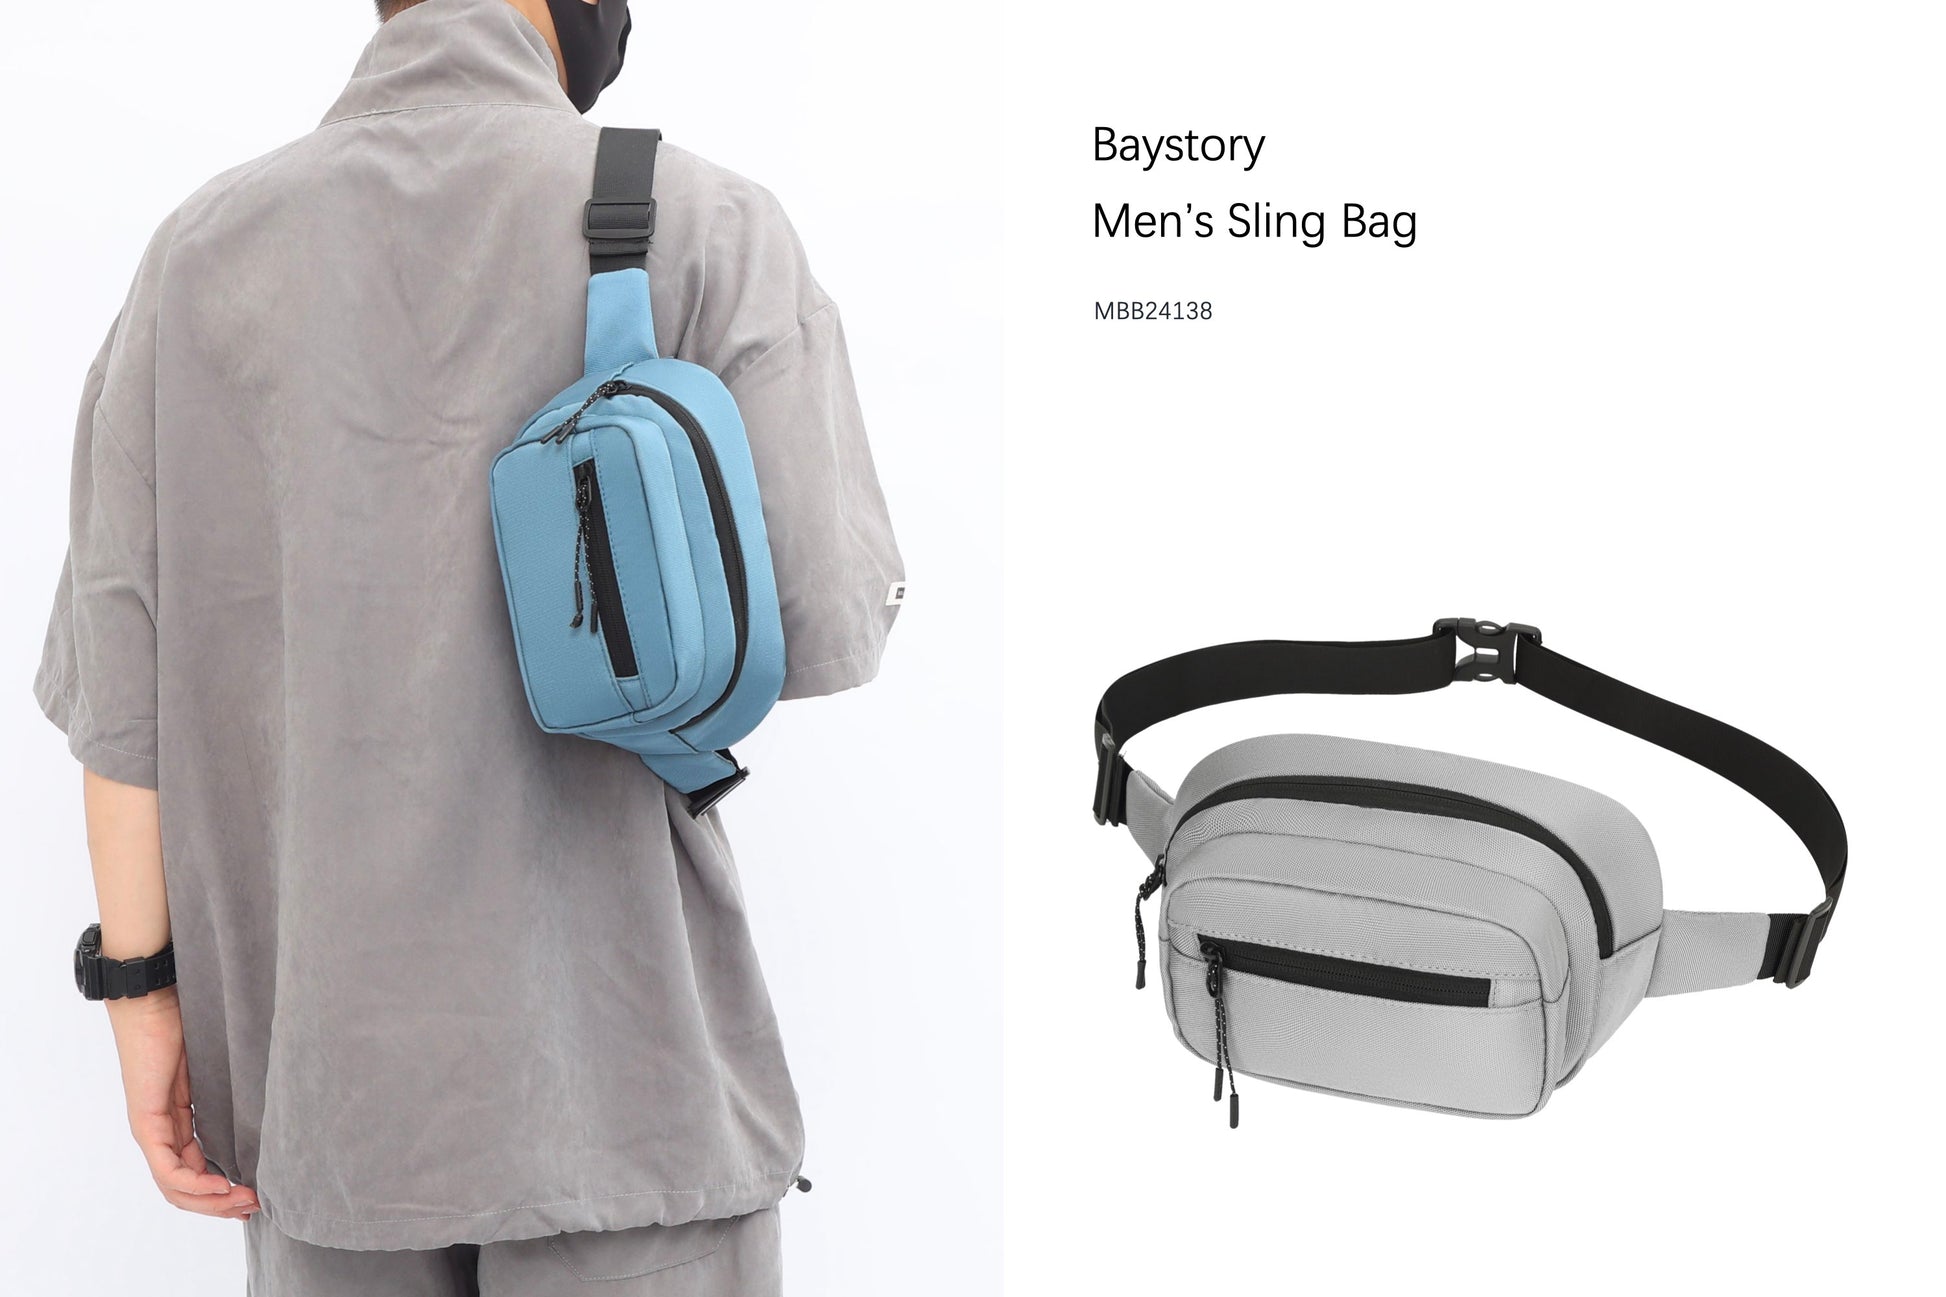 Baystory Men’s Sling Bag MBB24138 - Baystory